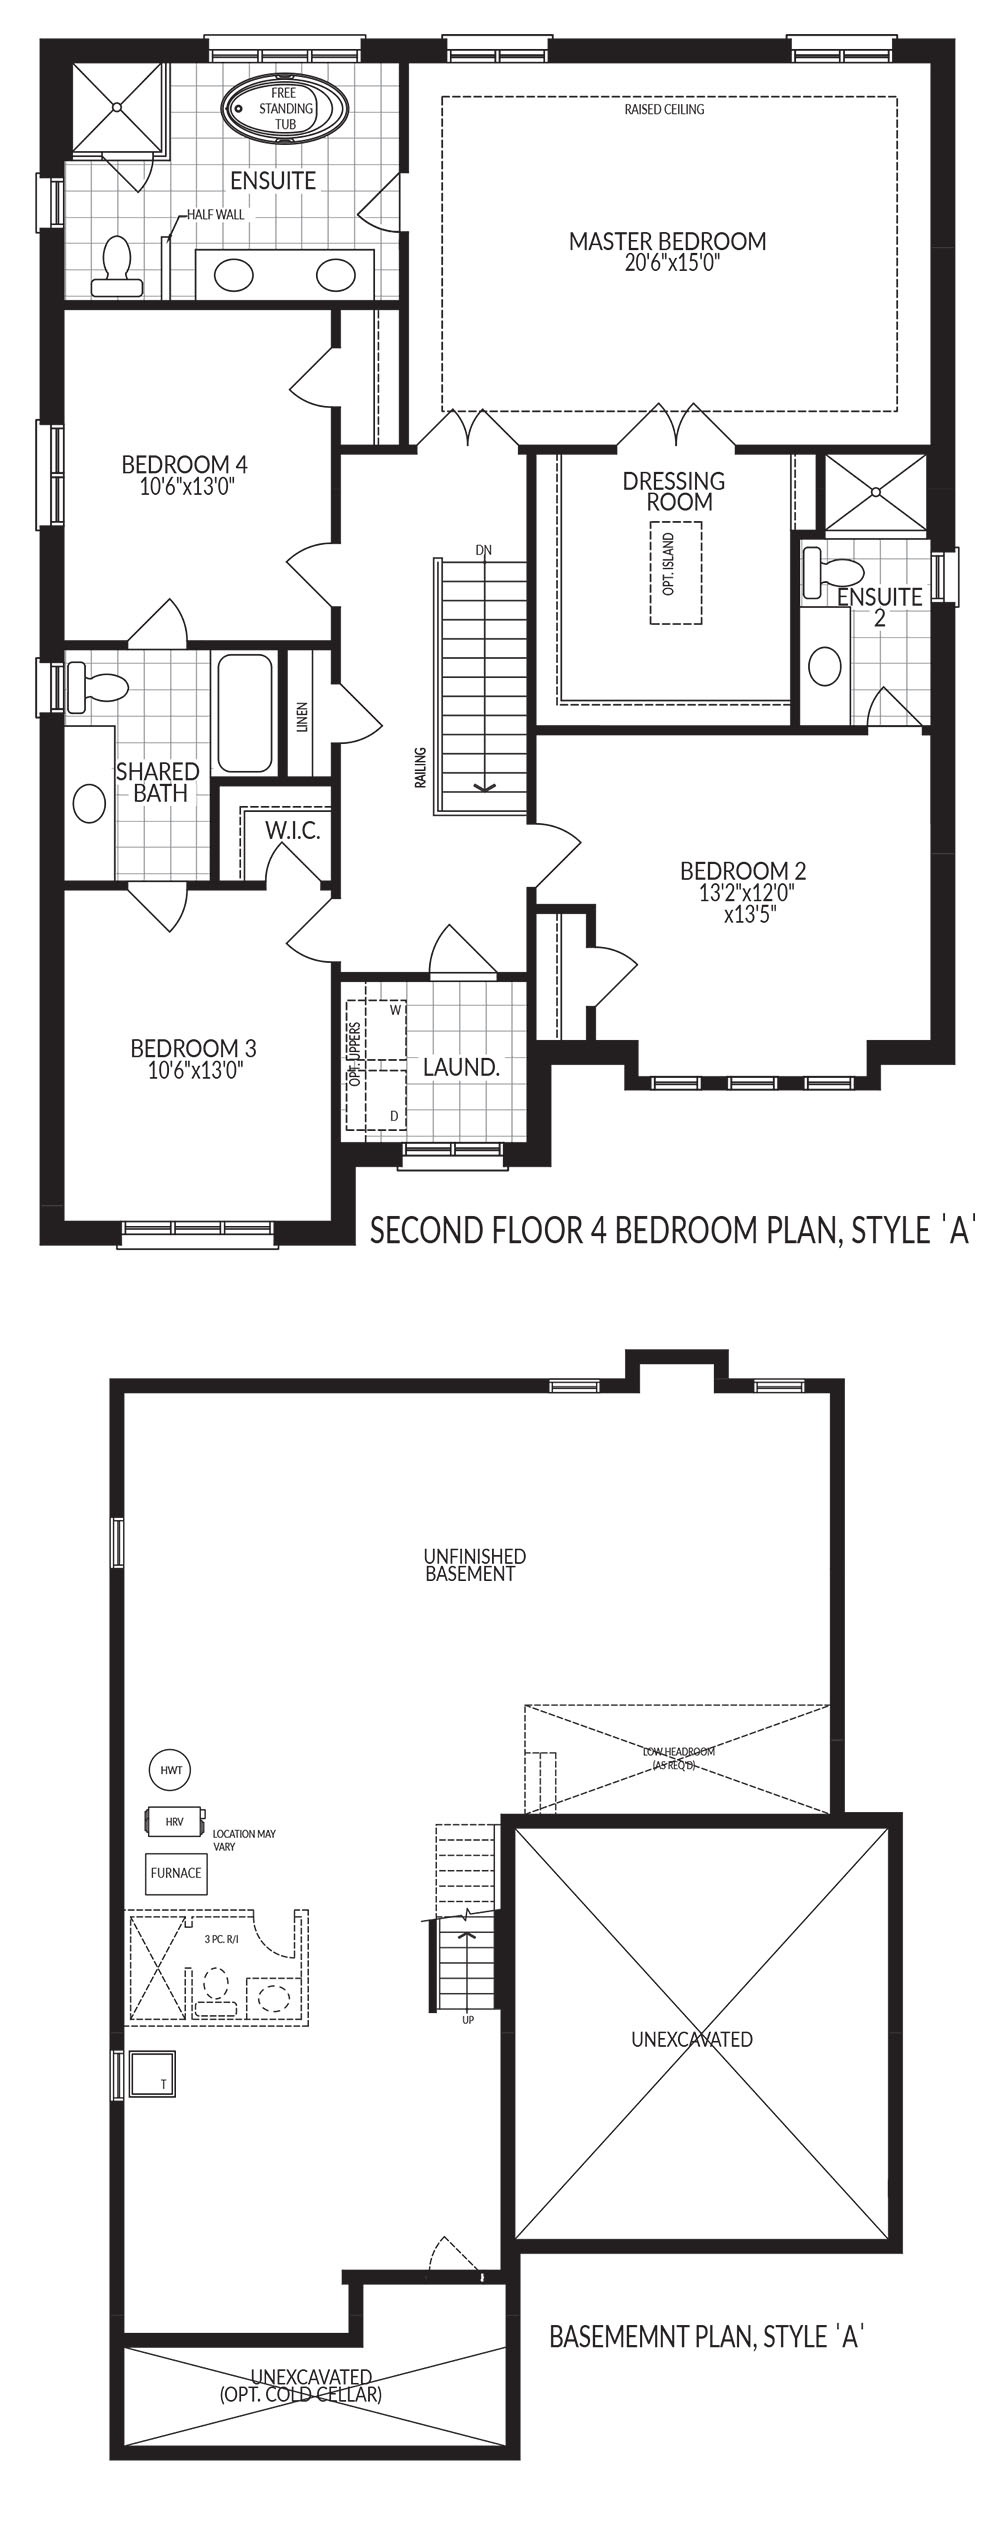 Second Floor, Basement Plan